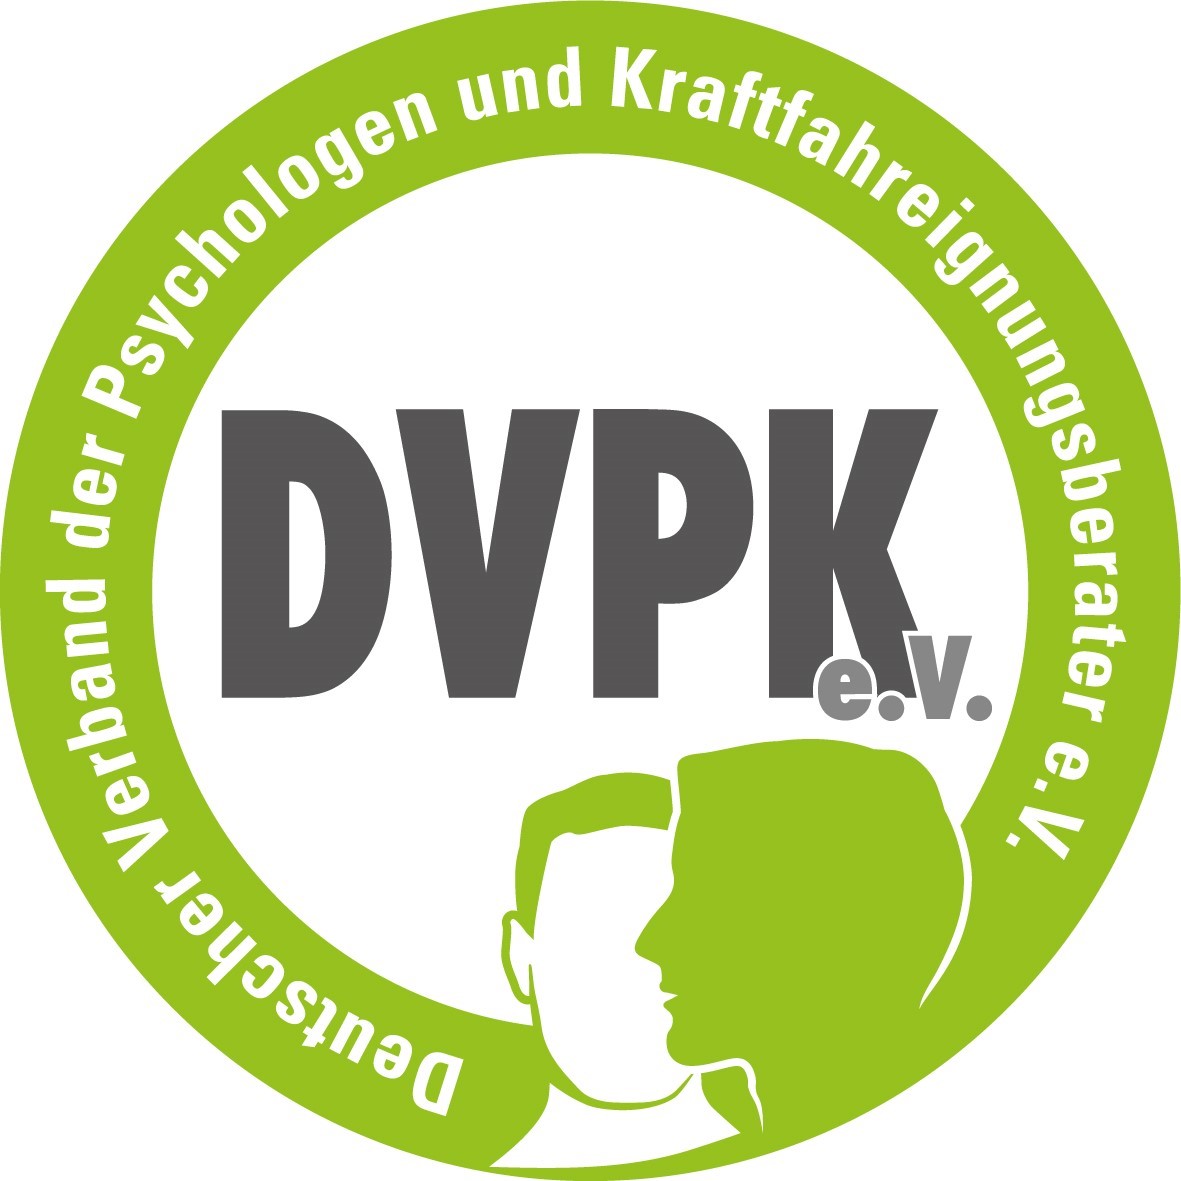 Deutscher Verband der Psychologen und Kraftfahreignungsberater e.V.